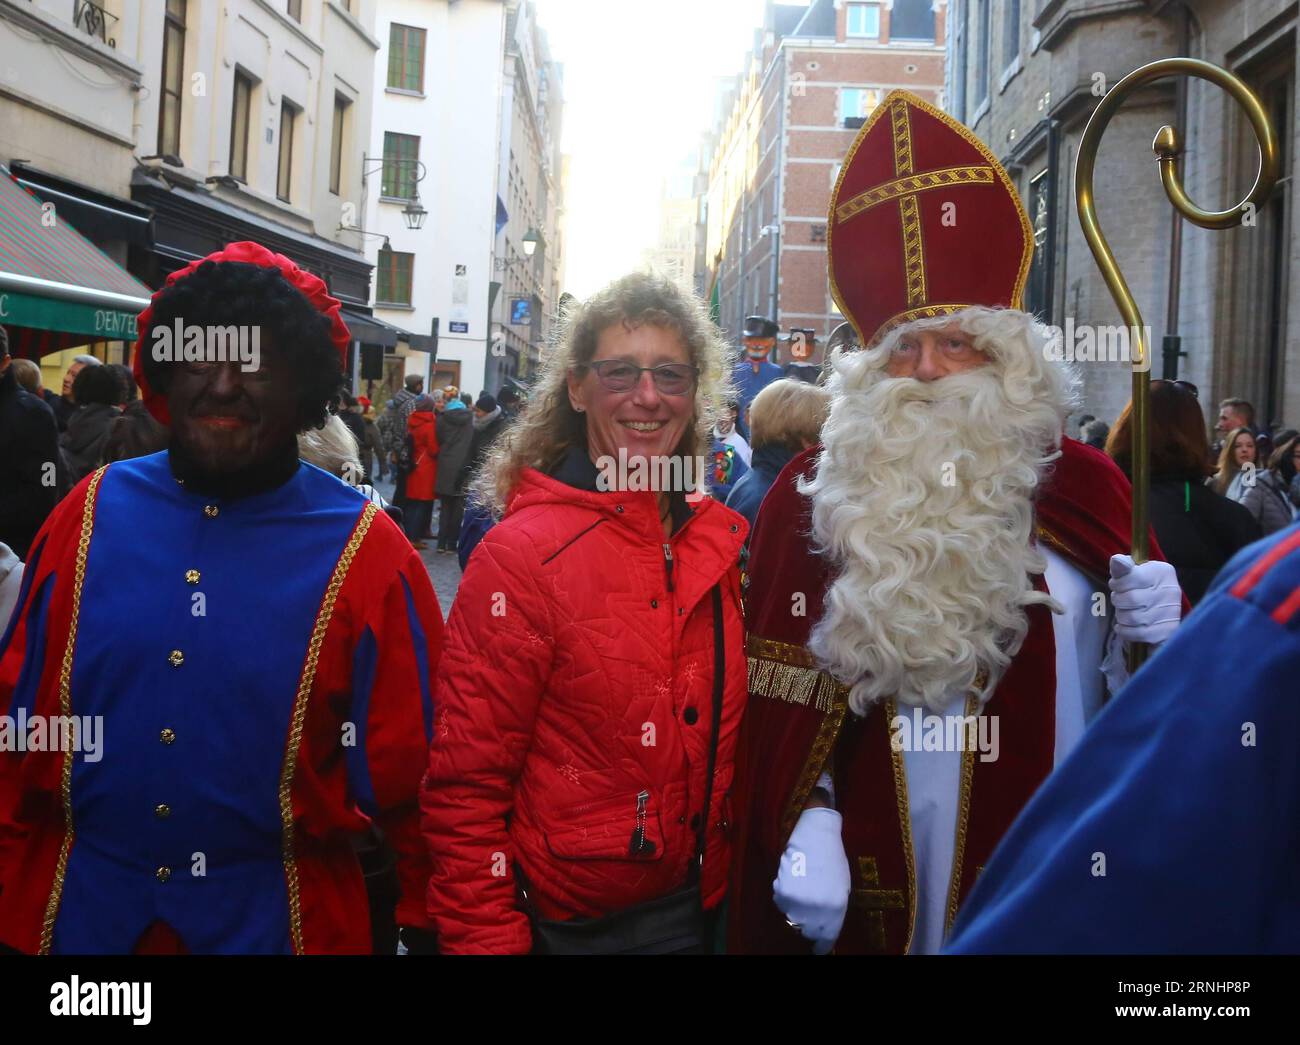 Ein Tourist macht Fotos mit Saint-Nicolas während der Saint-Nicolas Parade in Brüssel, Belgien, 3. Dezember 2016. Saint-Nicolas, einer der Quellen der beliebten Weihnachtssymbole des Weihnachtsmanns, wird jährlich am Nikolaustag gefeiert. )(gj) BELGIEN-BRÜSSEL-SAINT NICOLAS GongxBing PUBLICATIONxNOTxINxCHN ein Tourist fotografiert mit Saint Nicolas während der Saint Nicolas Parade in Brüssel Belgien DEC 3 2016 Saint Nicolas, einer der Quellen der beliebten Weihnachtsfigur des Santa Claus, WIRD jährlich AM St. Nikolaus Tag GJ Belgien Brüssel gefeiert St. Nicolas GongxBing Stockfoto